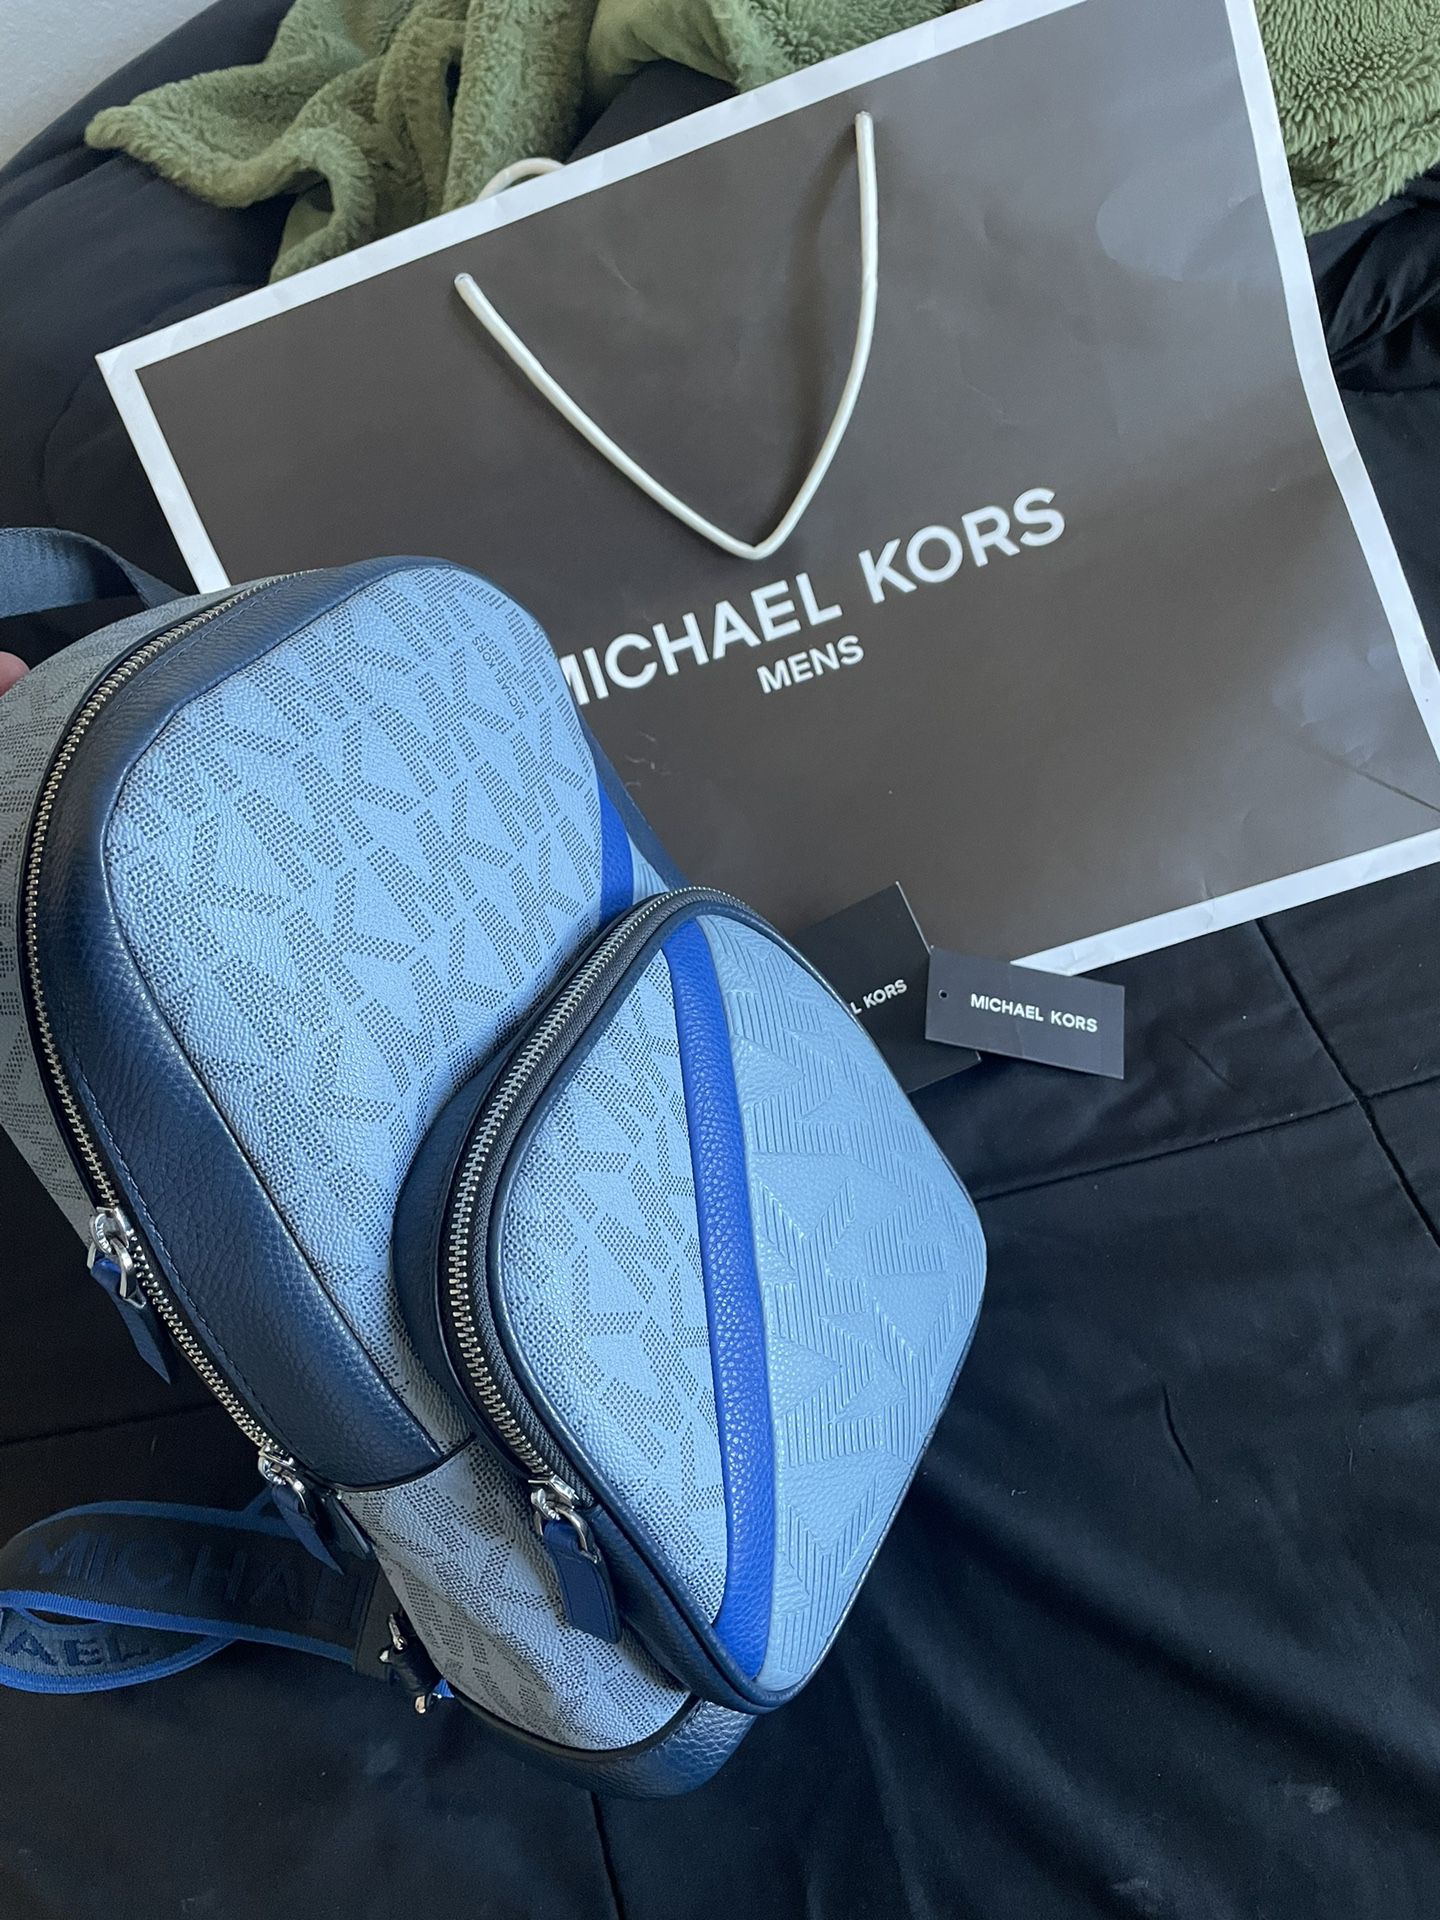 Michale Kora Men’s Bag